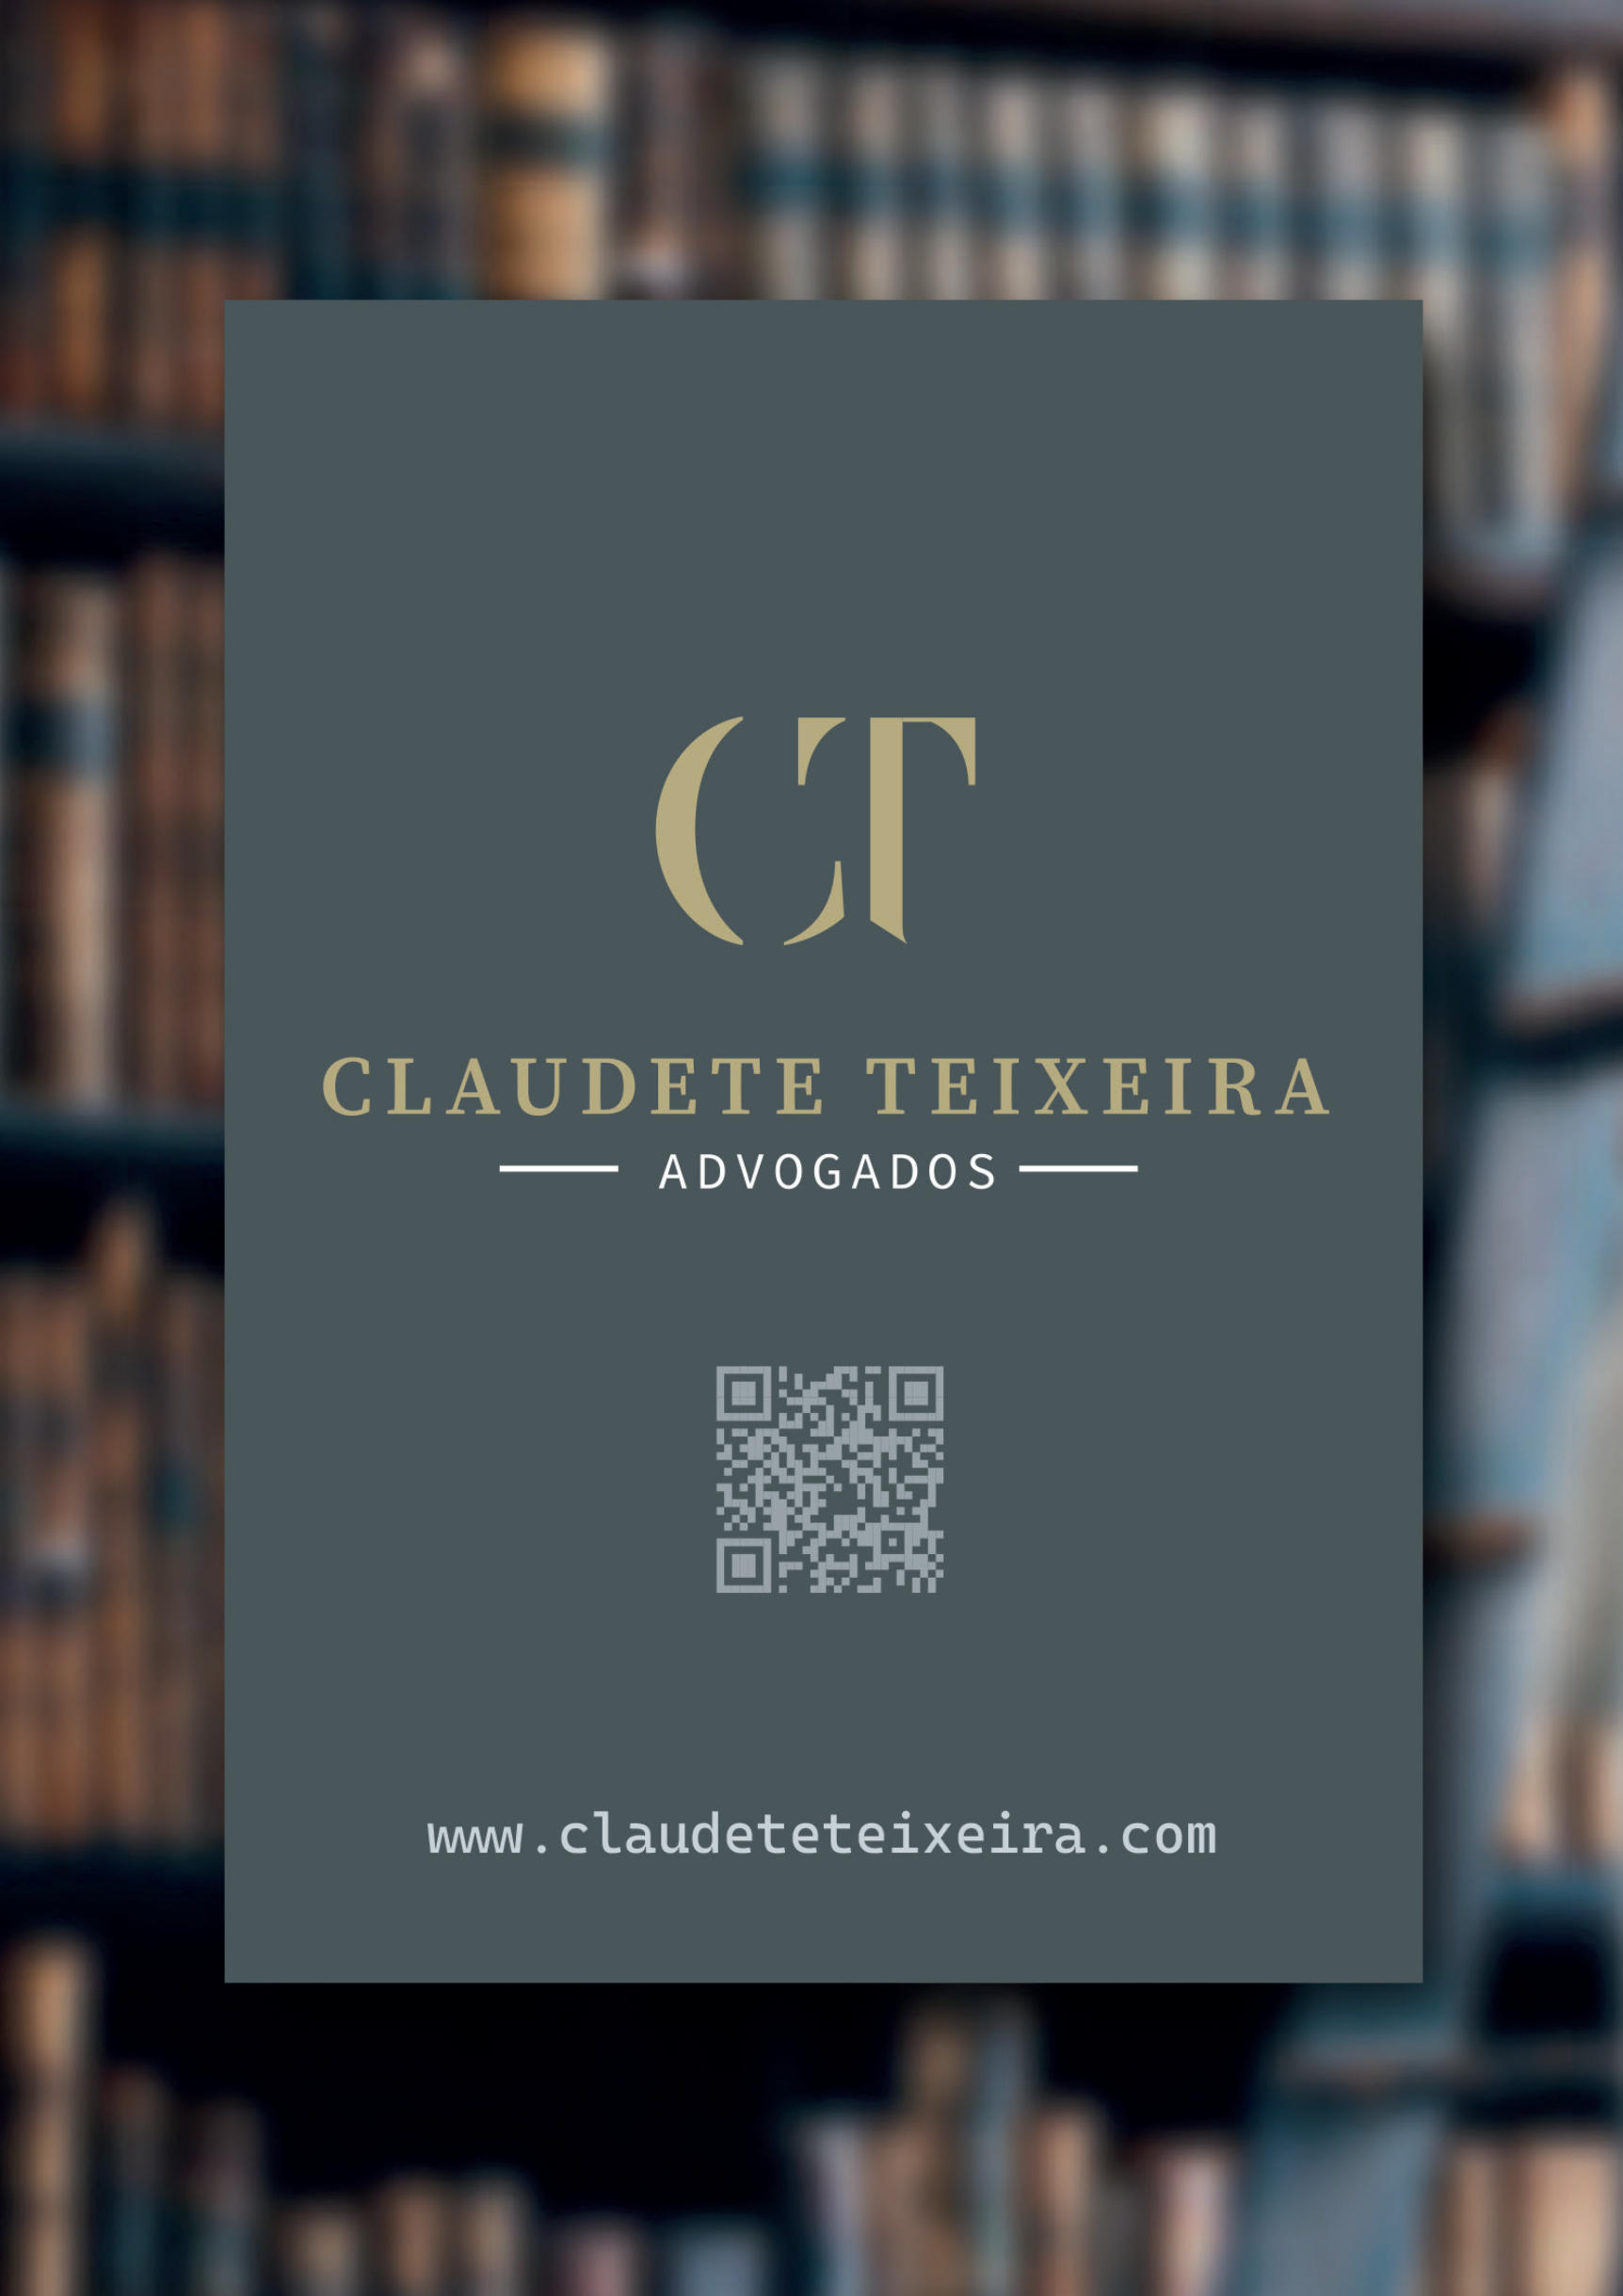 Claudete-Teixeira-PUB-MAR24.jpg